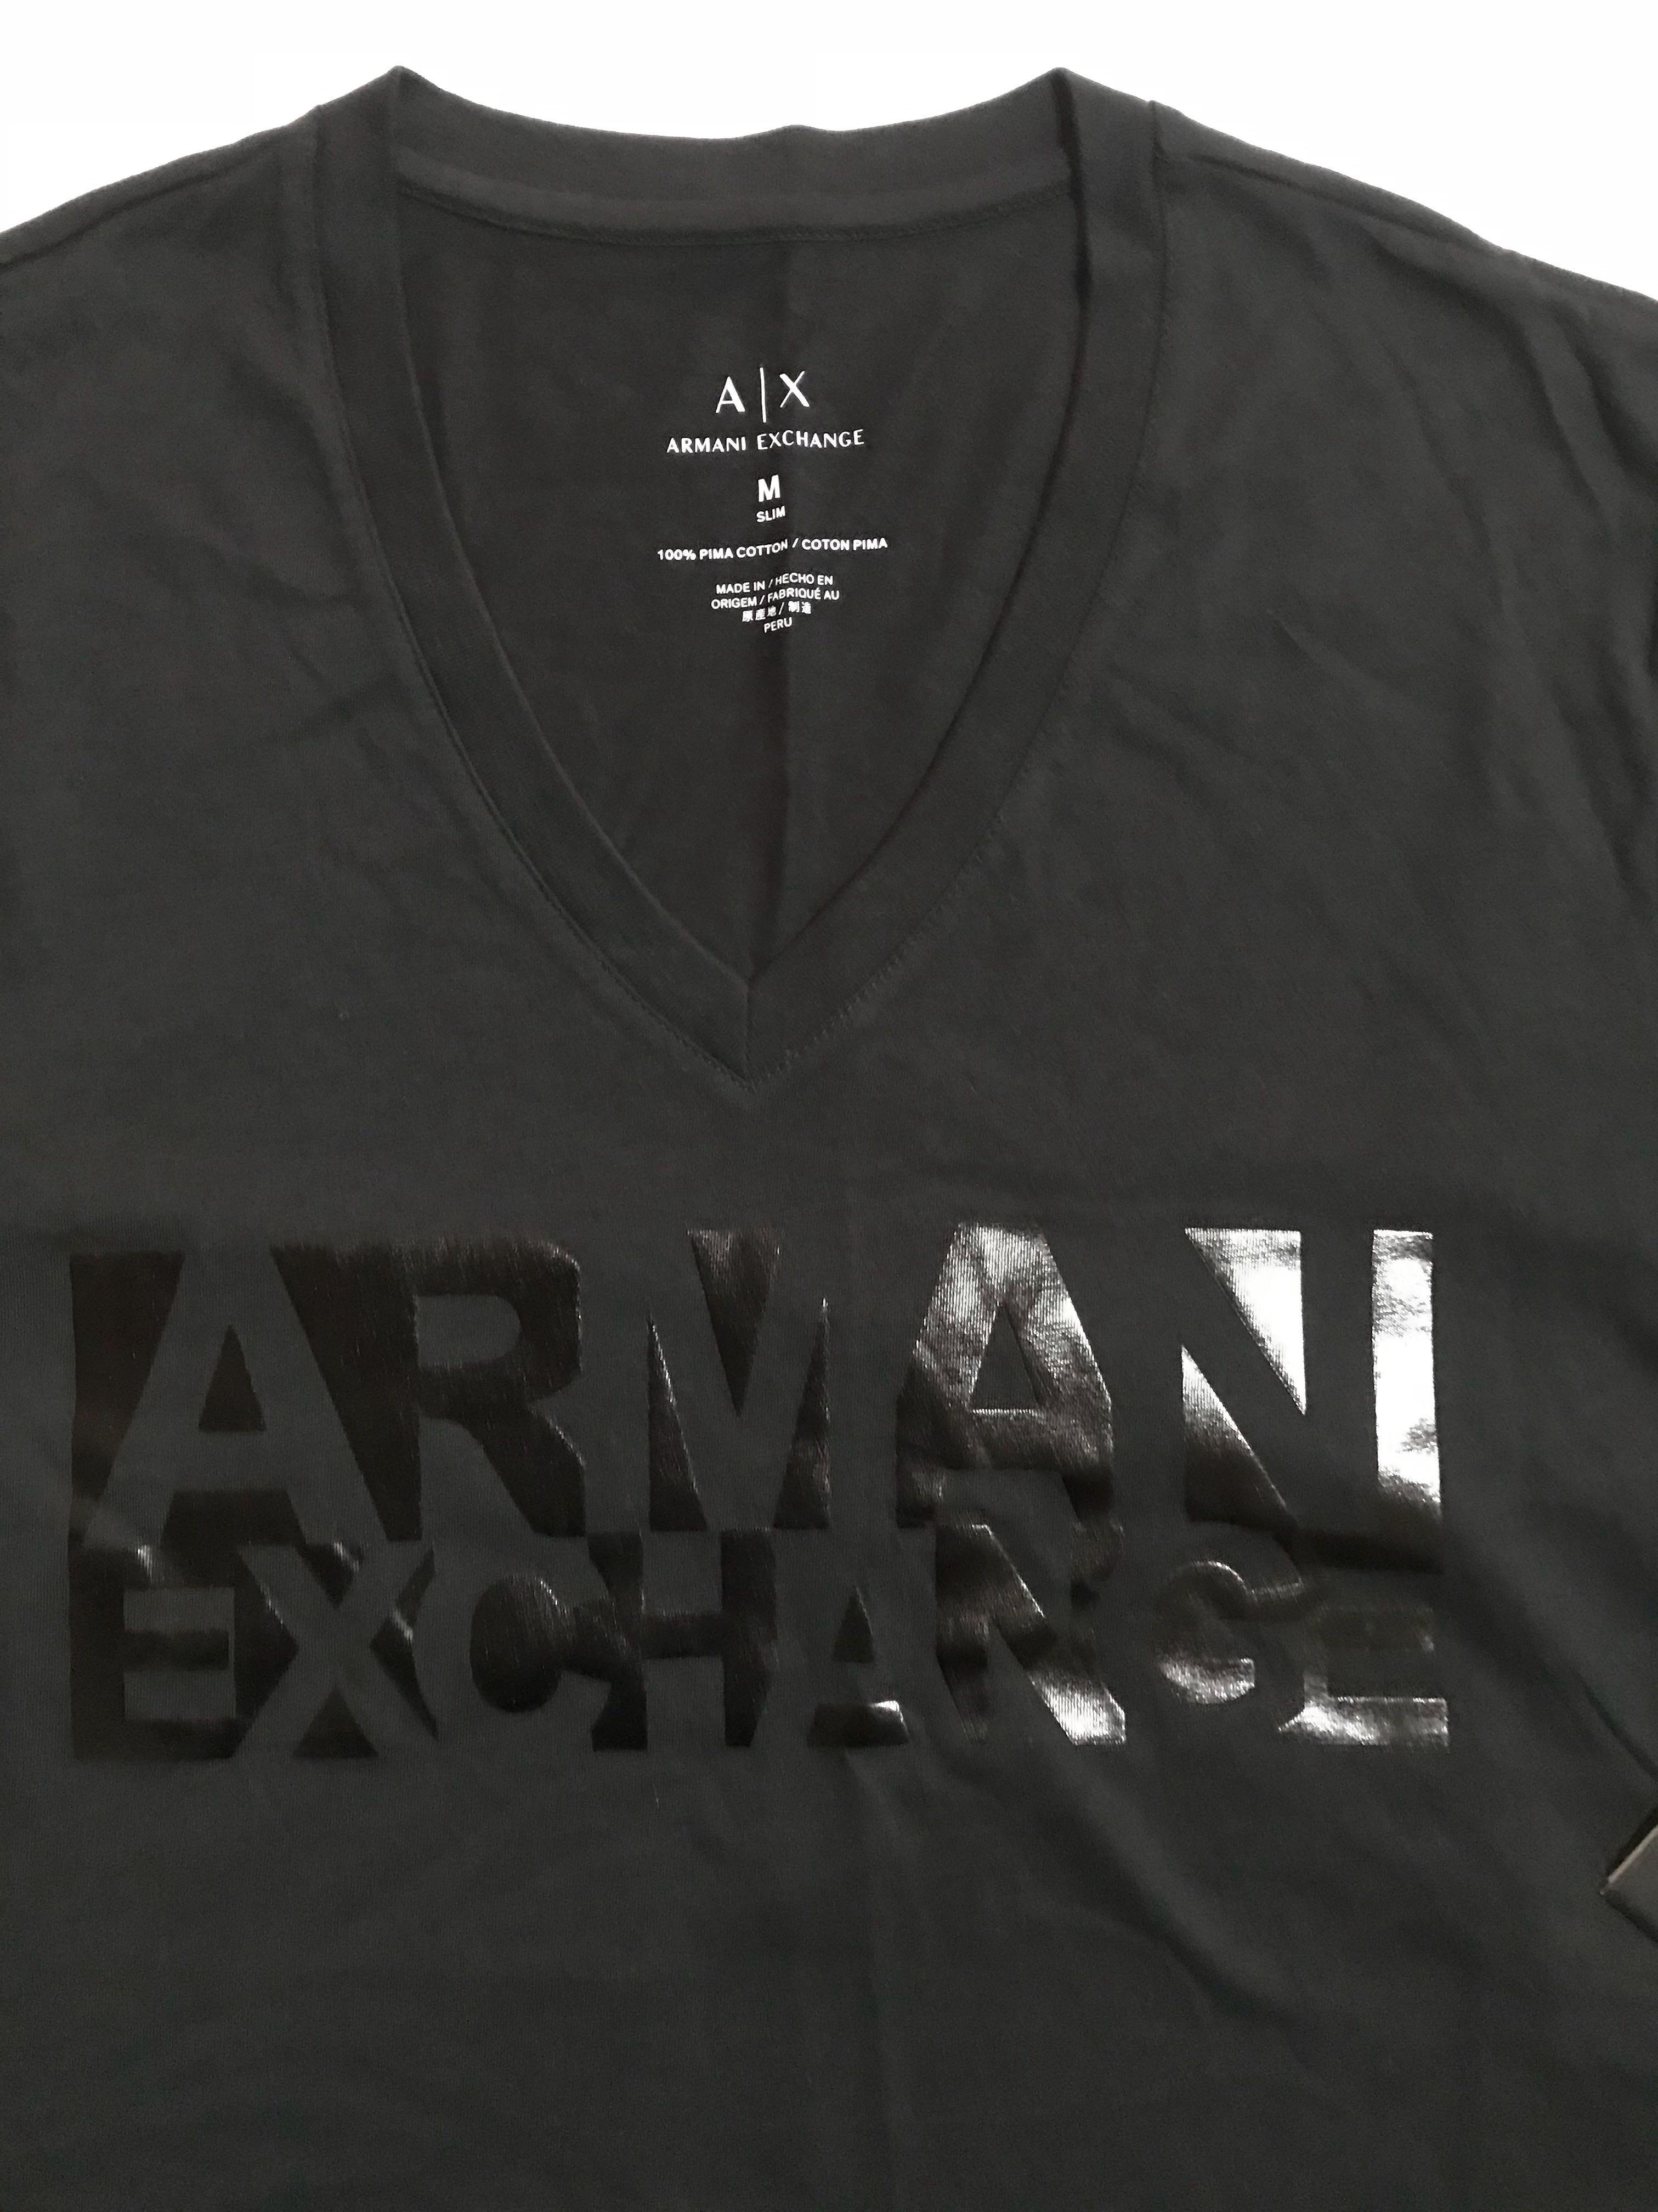 armani exchange t shirt made in peru